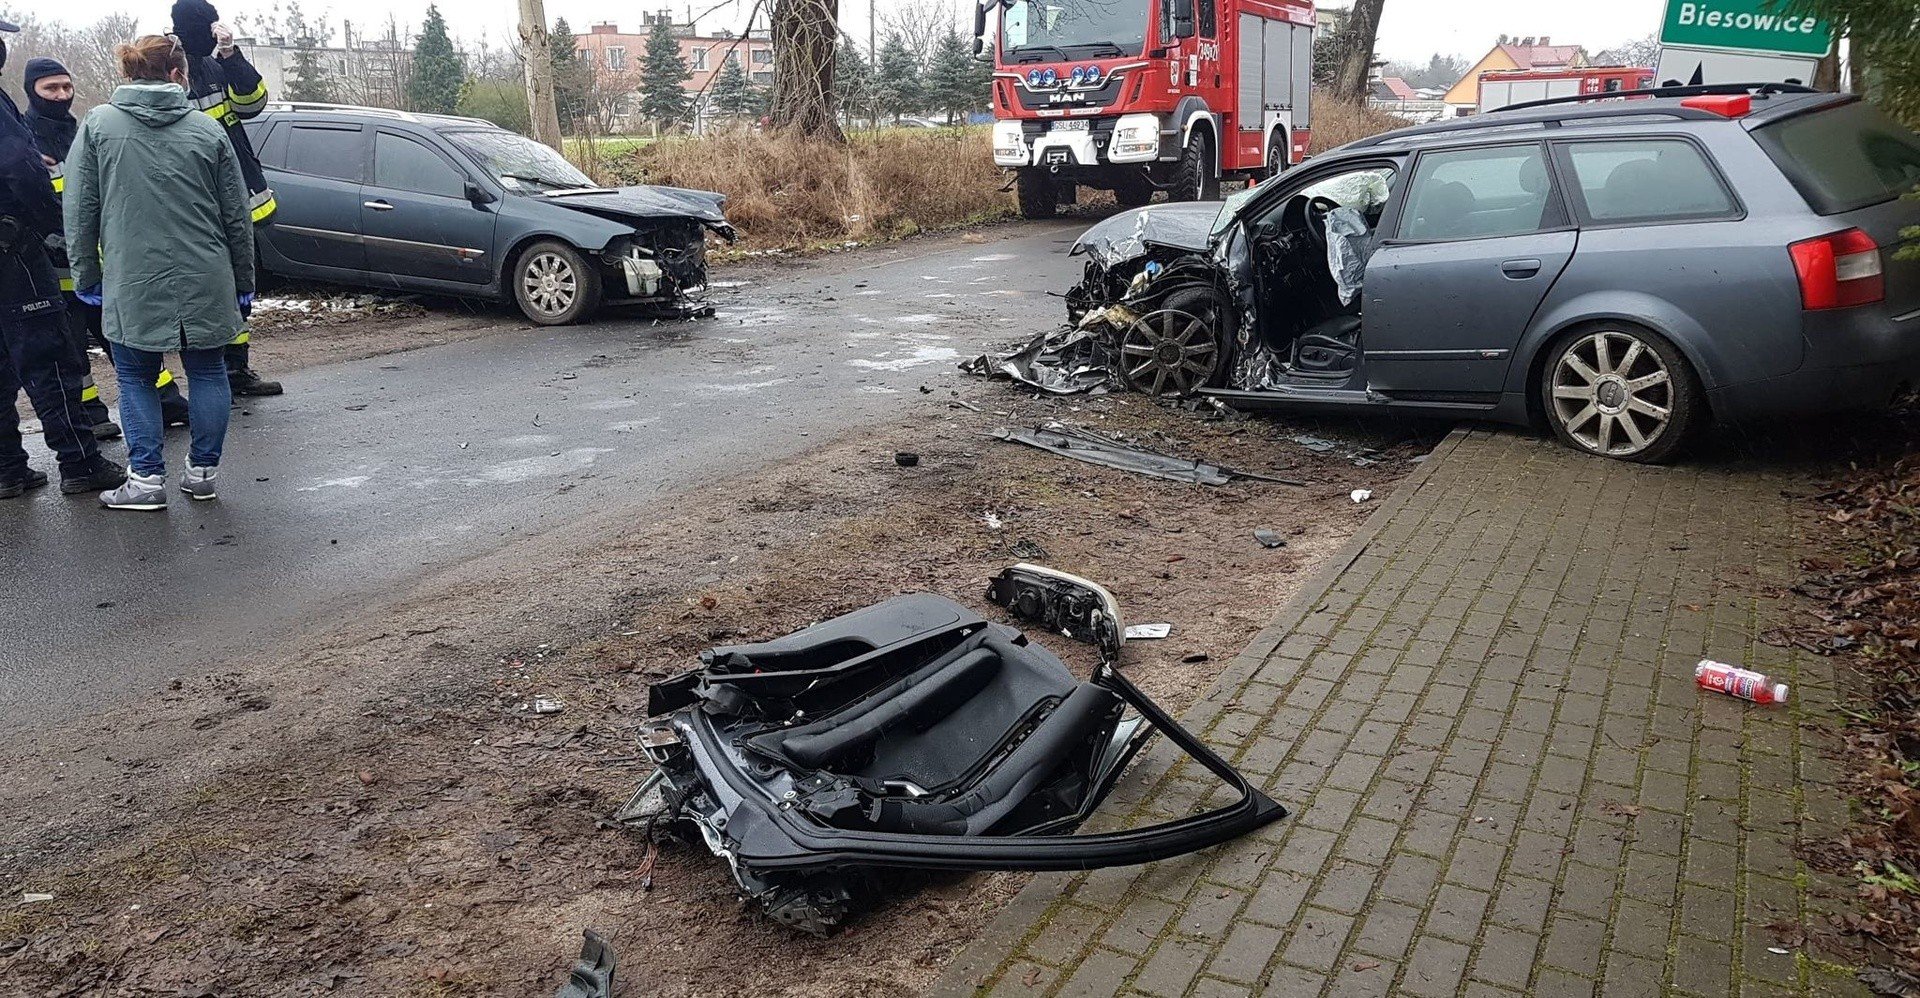 Wypadek w Biesowicach. Czołowo zderzyły się dwa samochody